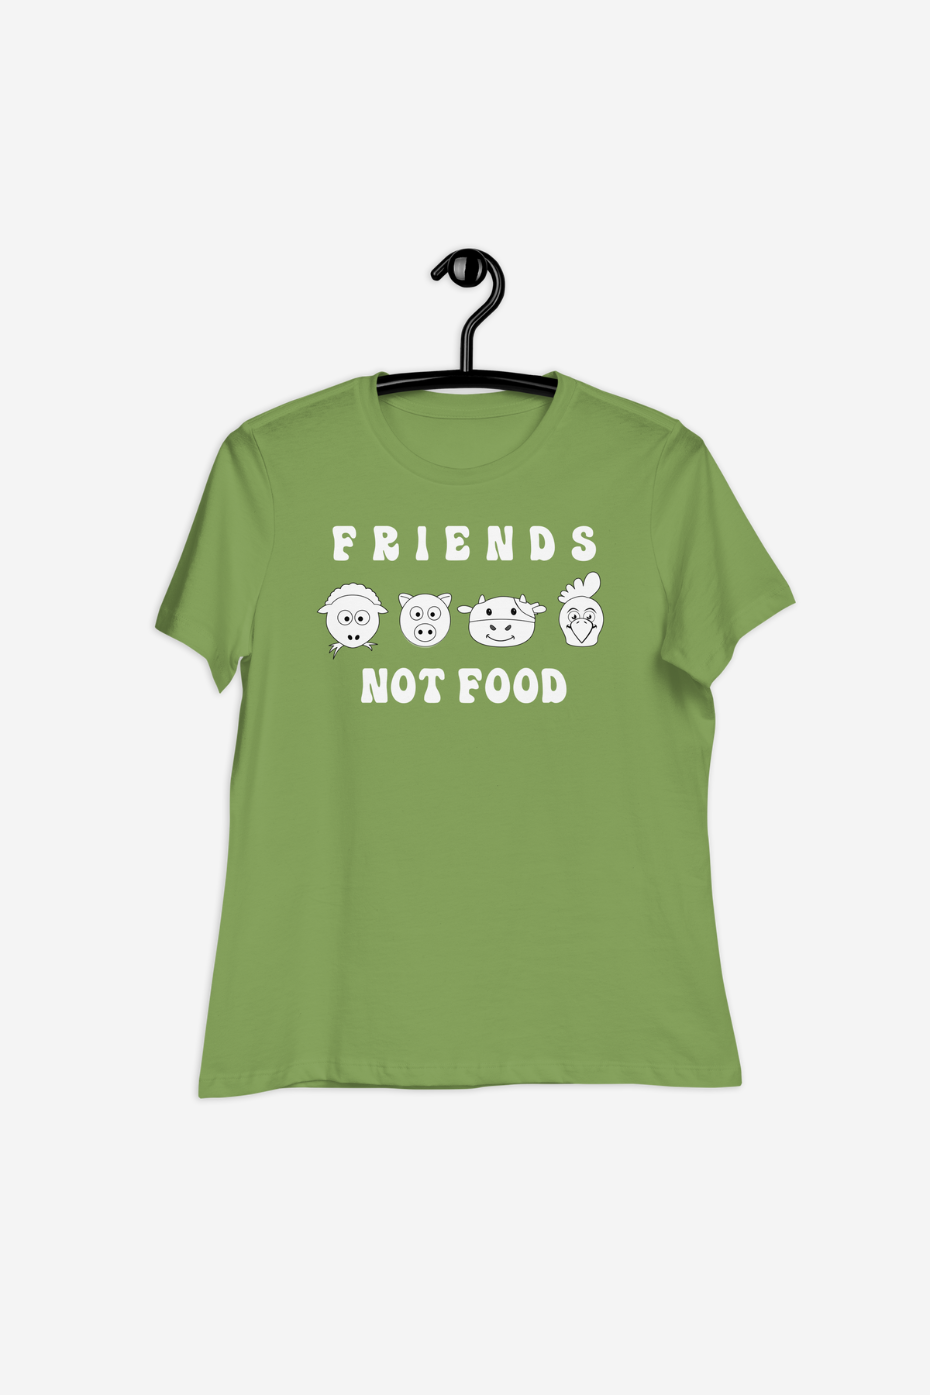 Friends Not Food Women's Relaxed T-Shirt